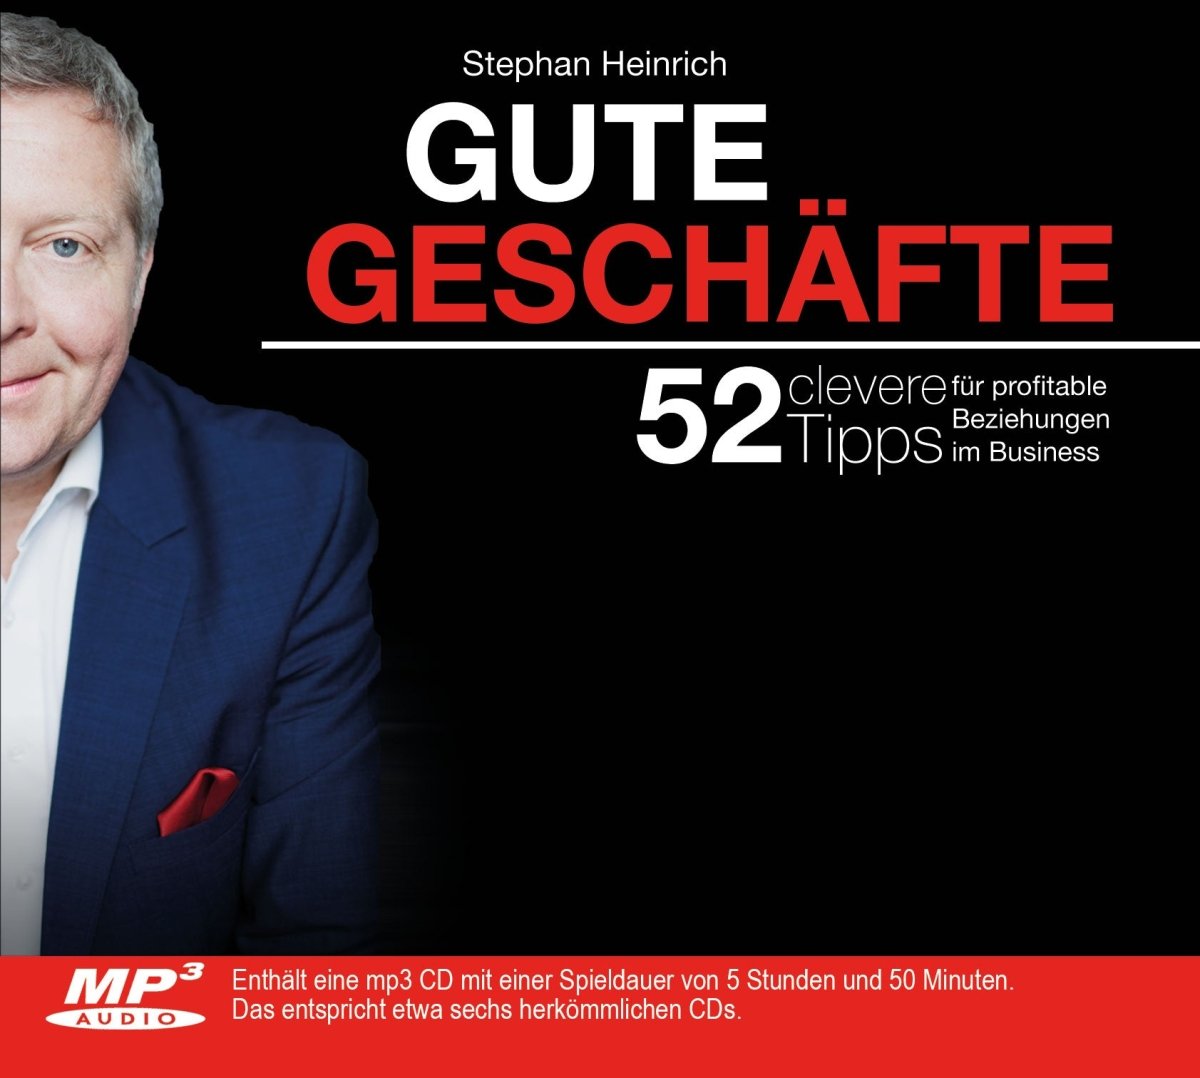 Hörbuch als Download: Gute Geschäfte - 52 clevere Tipps für profitable Beziehungen im Business - Stephan Heinrich